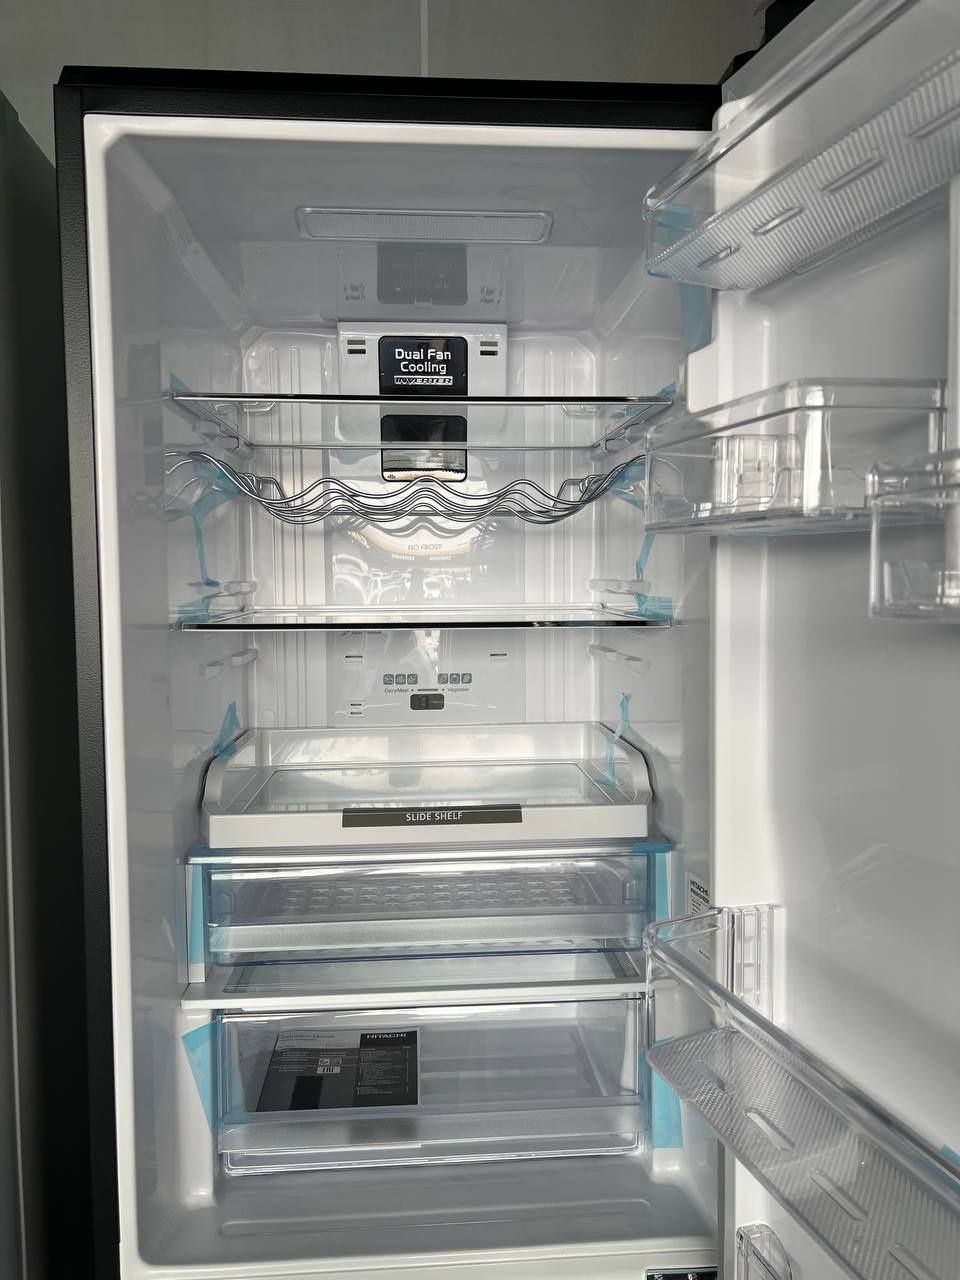 Холодильник HITACHI модель: R-BG410PUC6X GBK